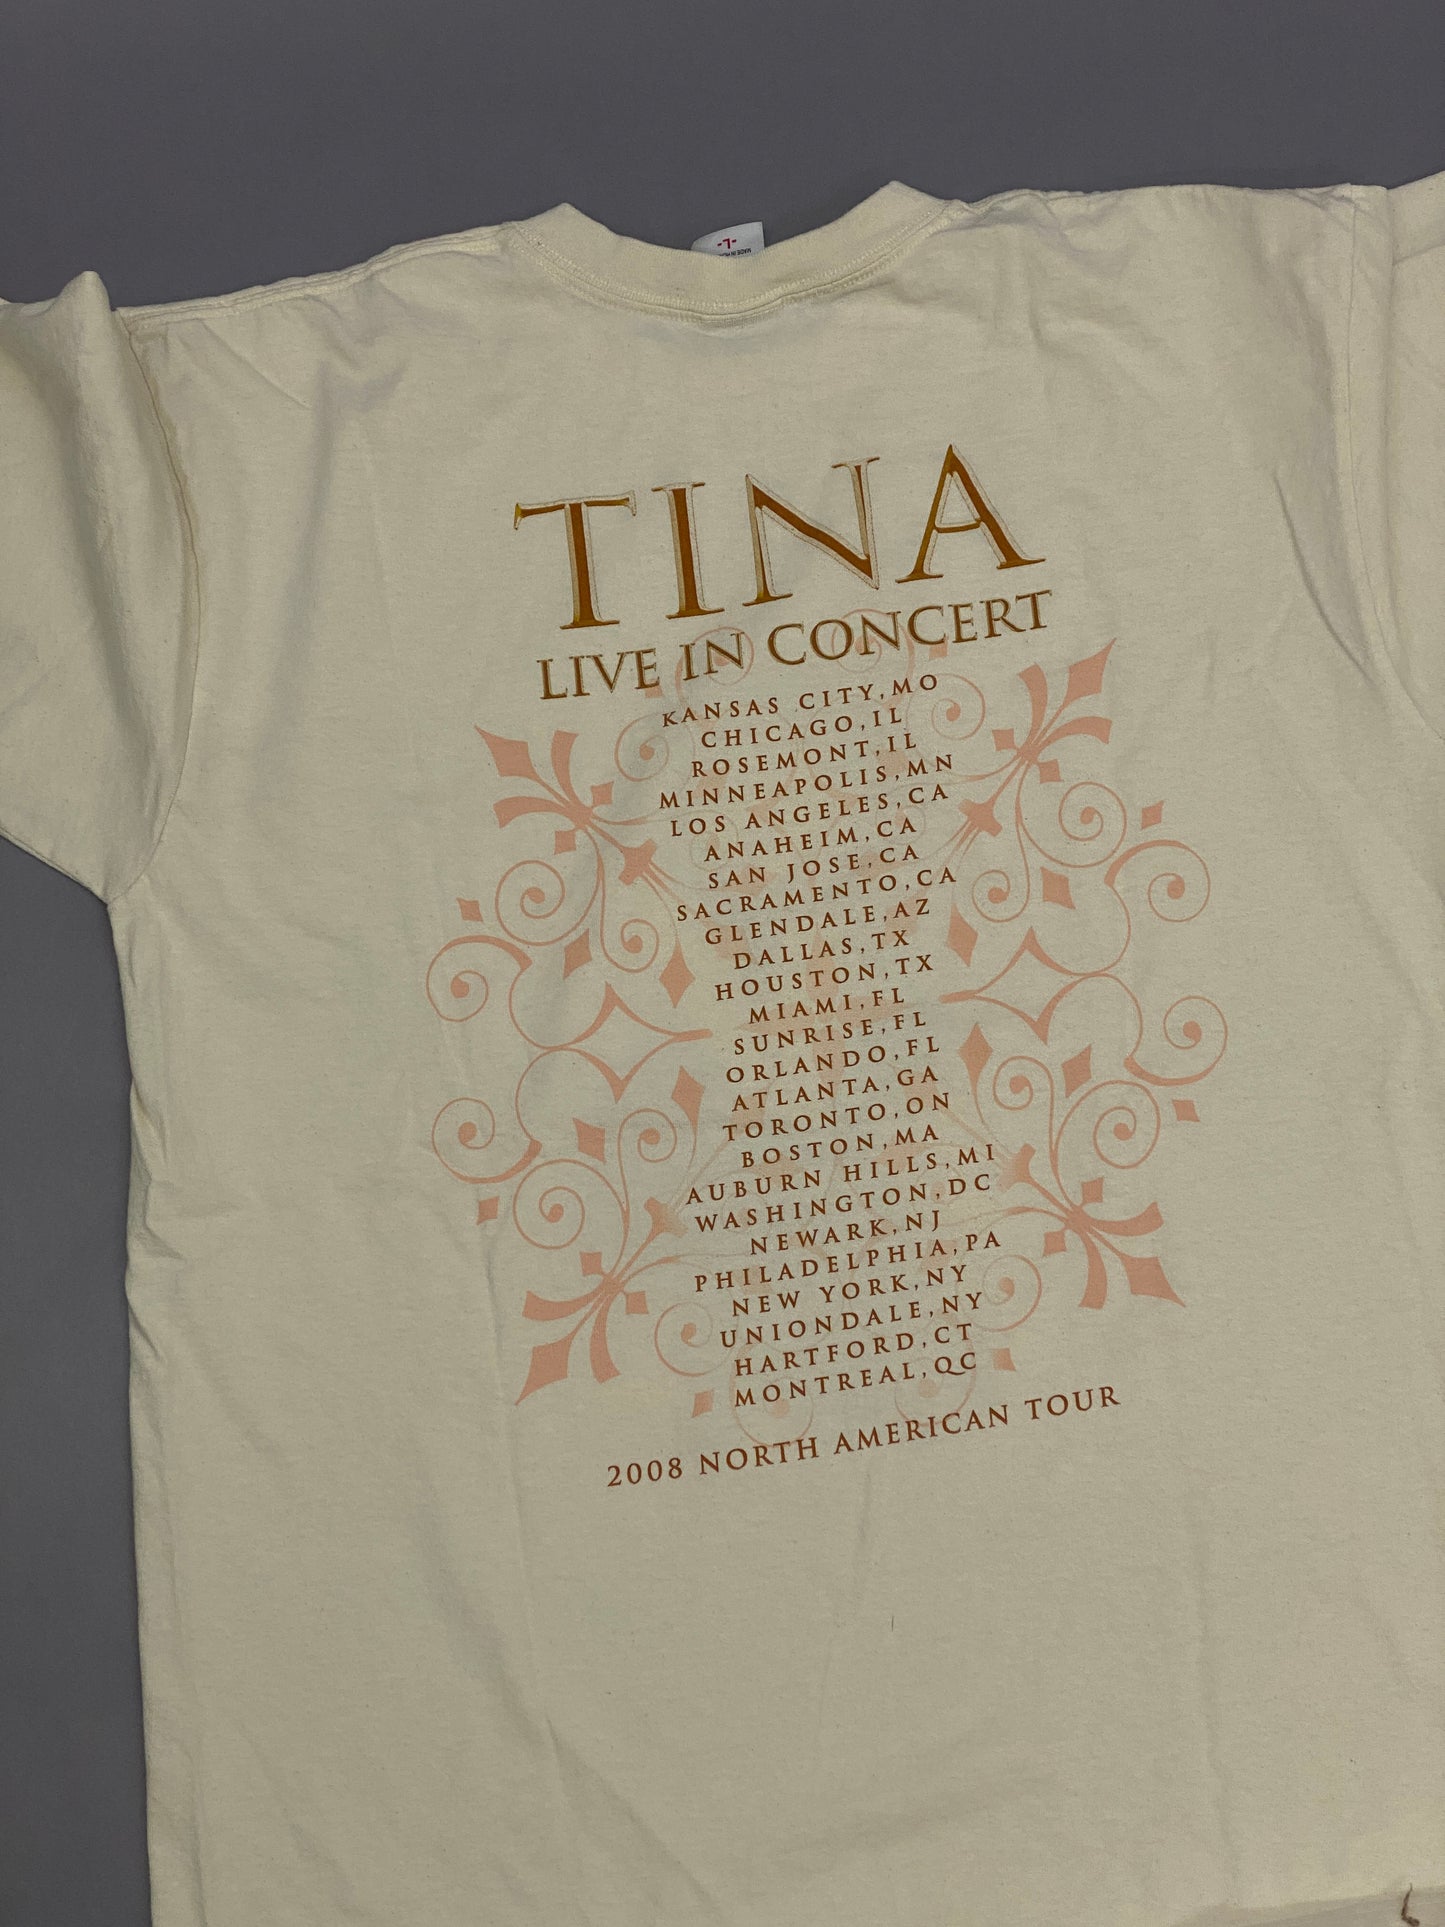 Tina Turner 2008 T-shirt